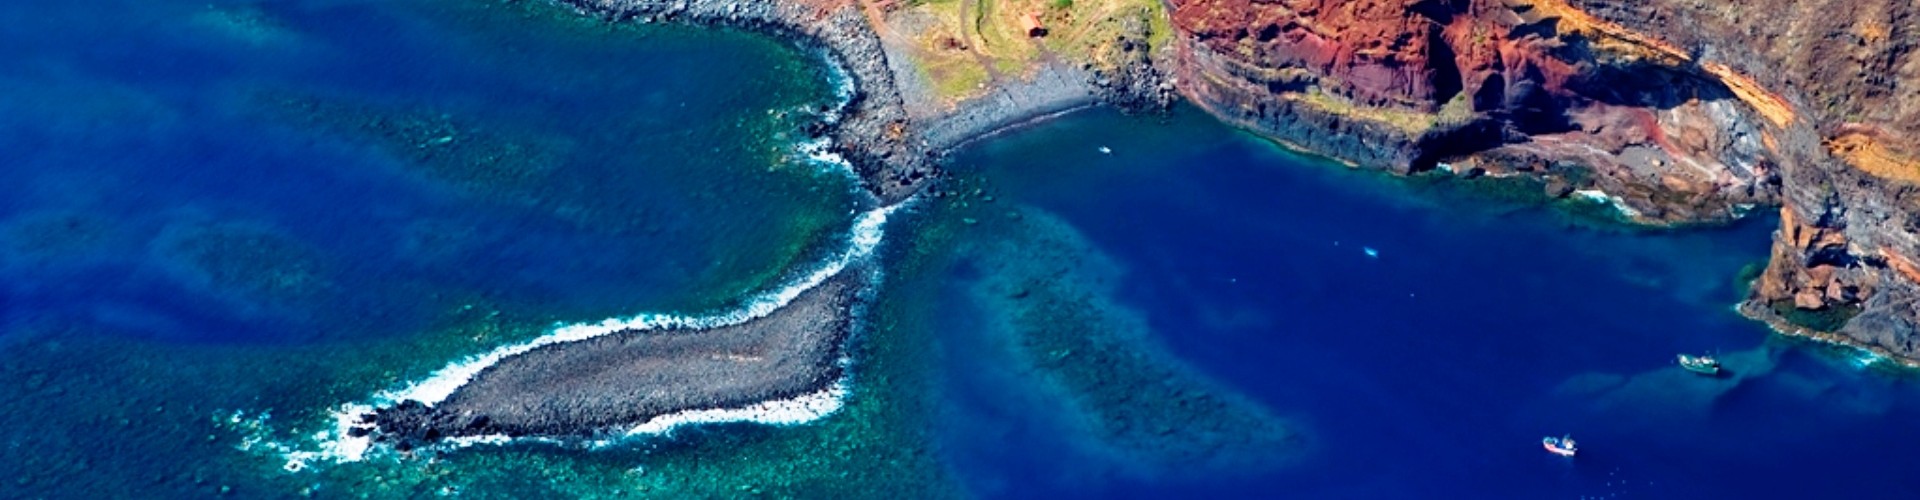 Reserva Naturas das Desertas Islands Natural Reserve, Madeira